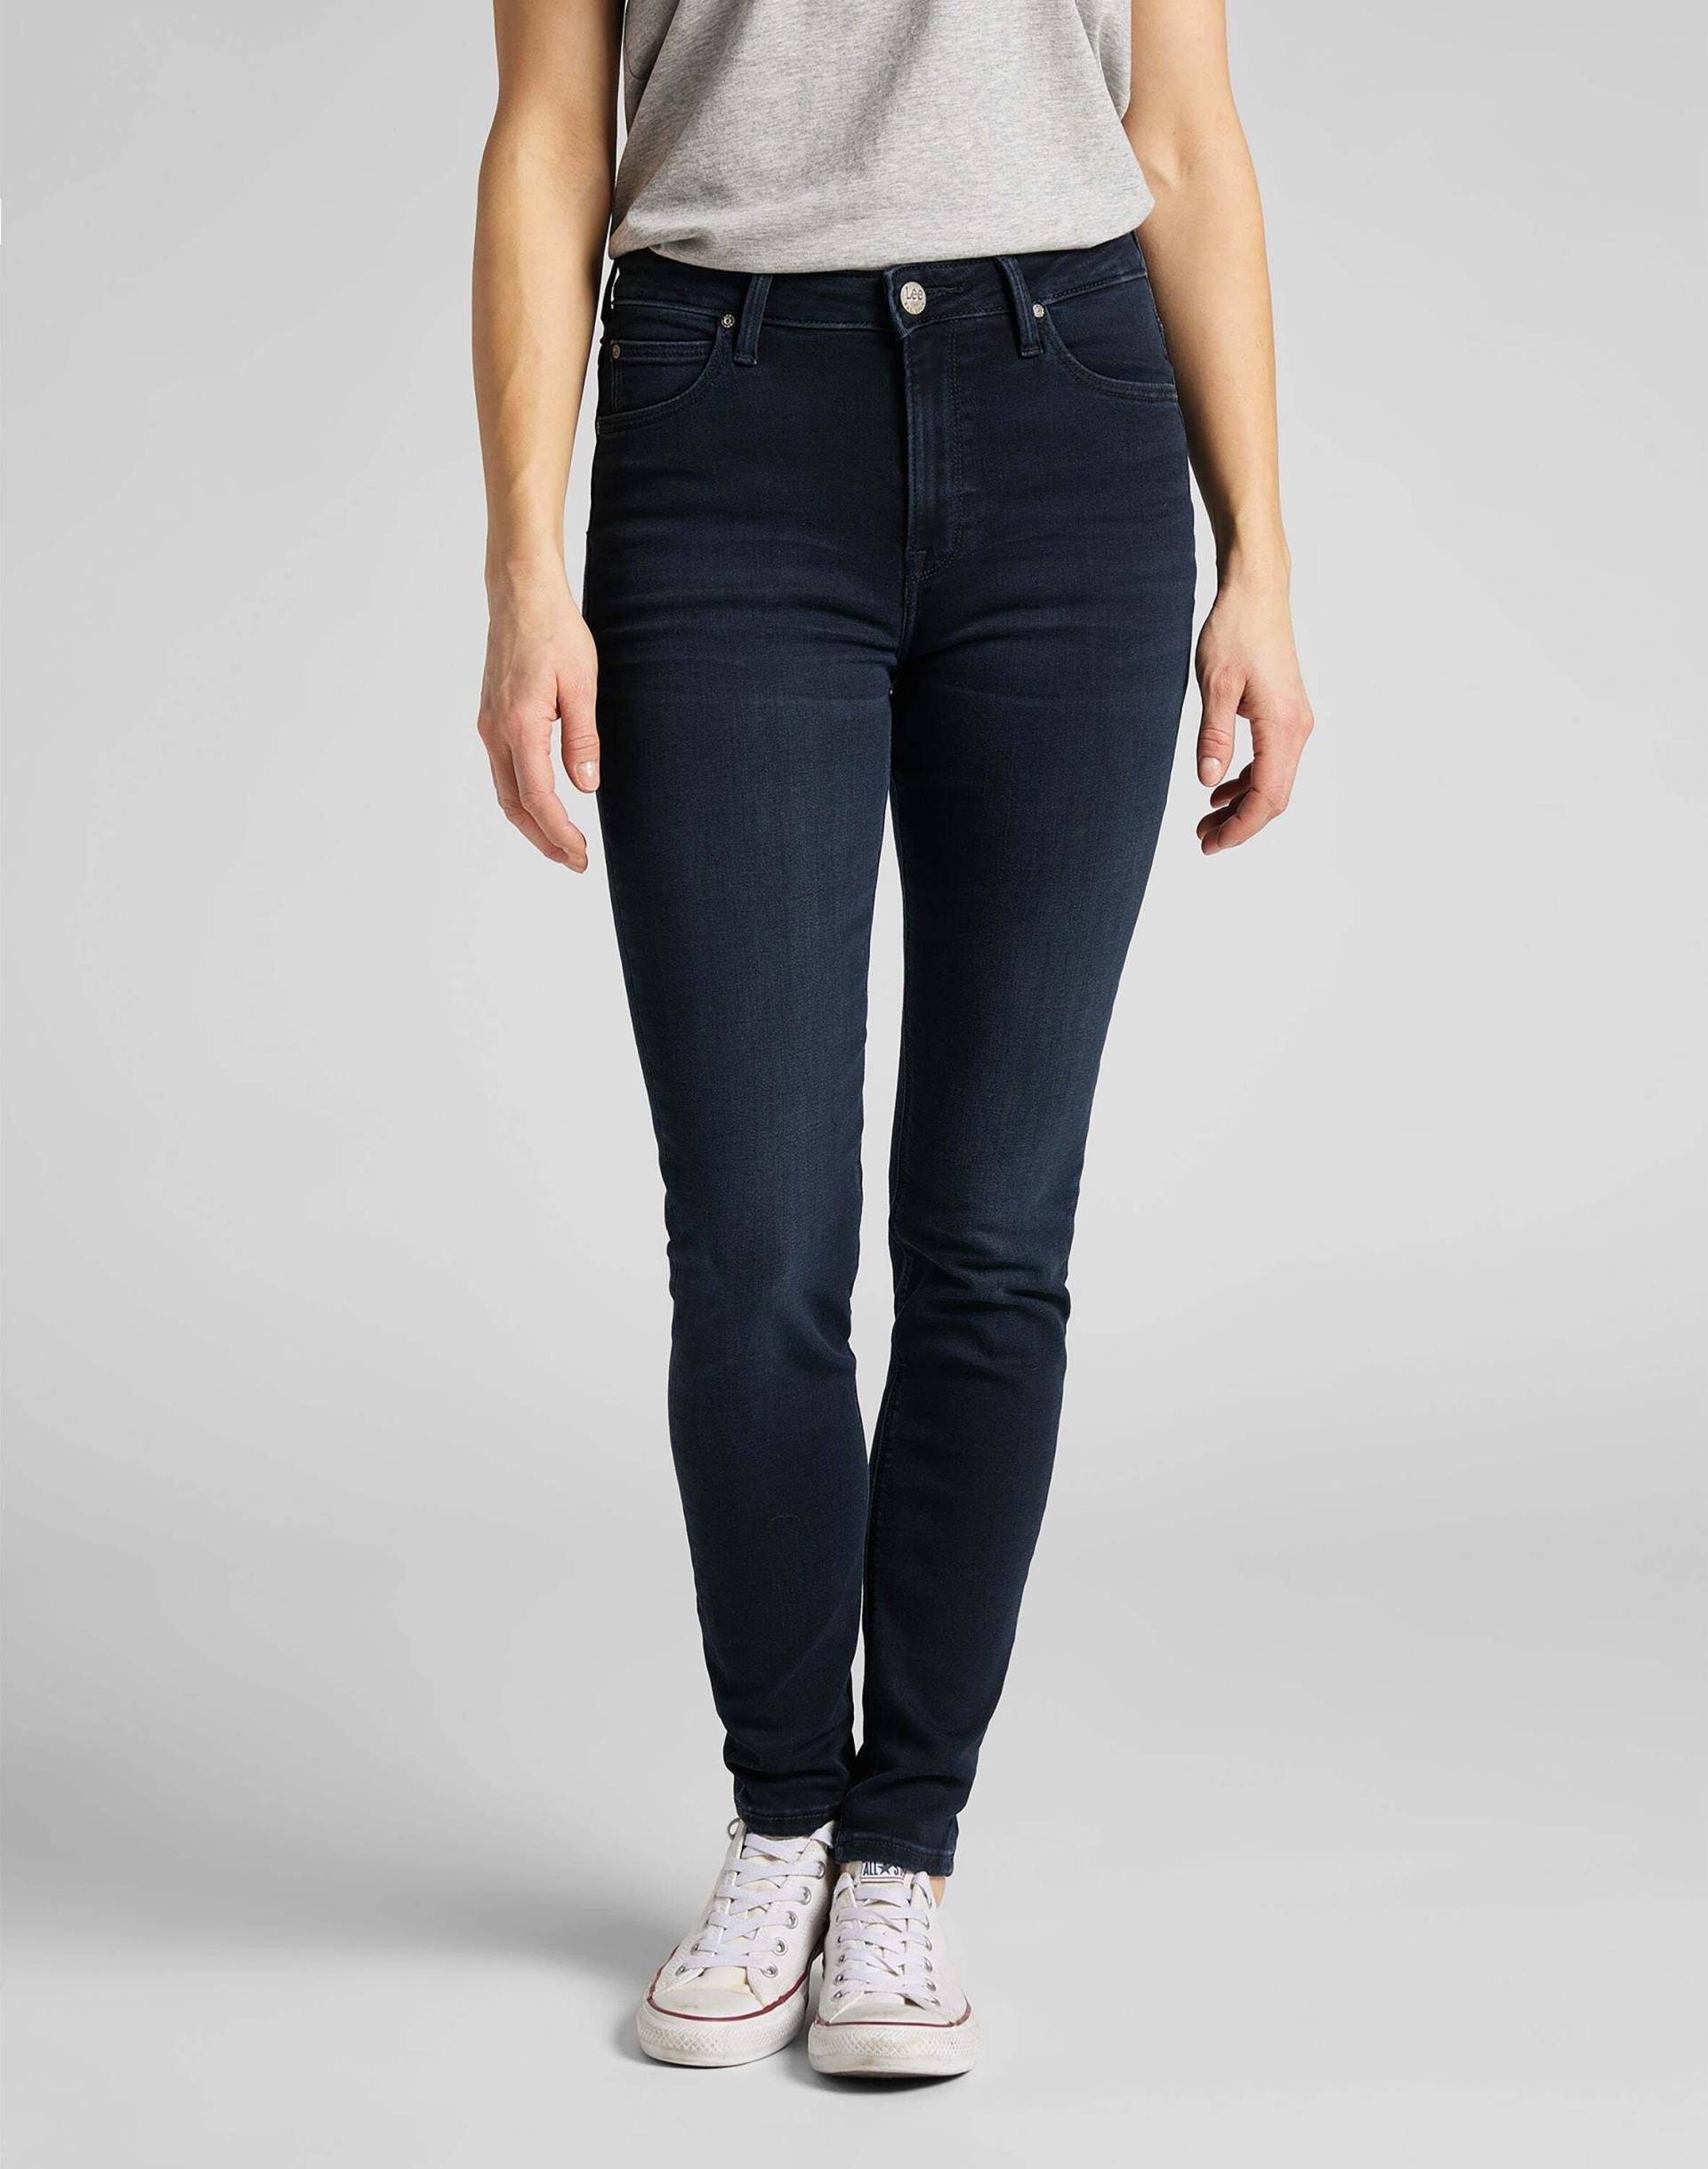 Jeans Skinny Fit Scarlett High Damen Marine L31/W33 von Lee